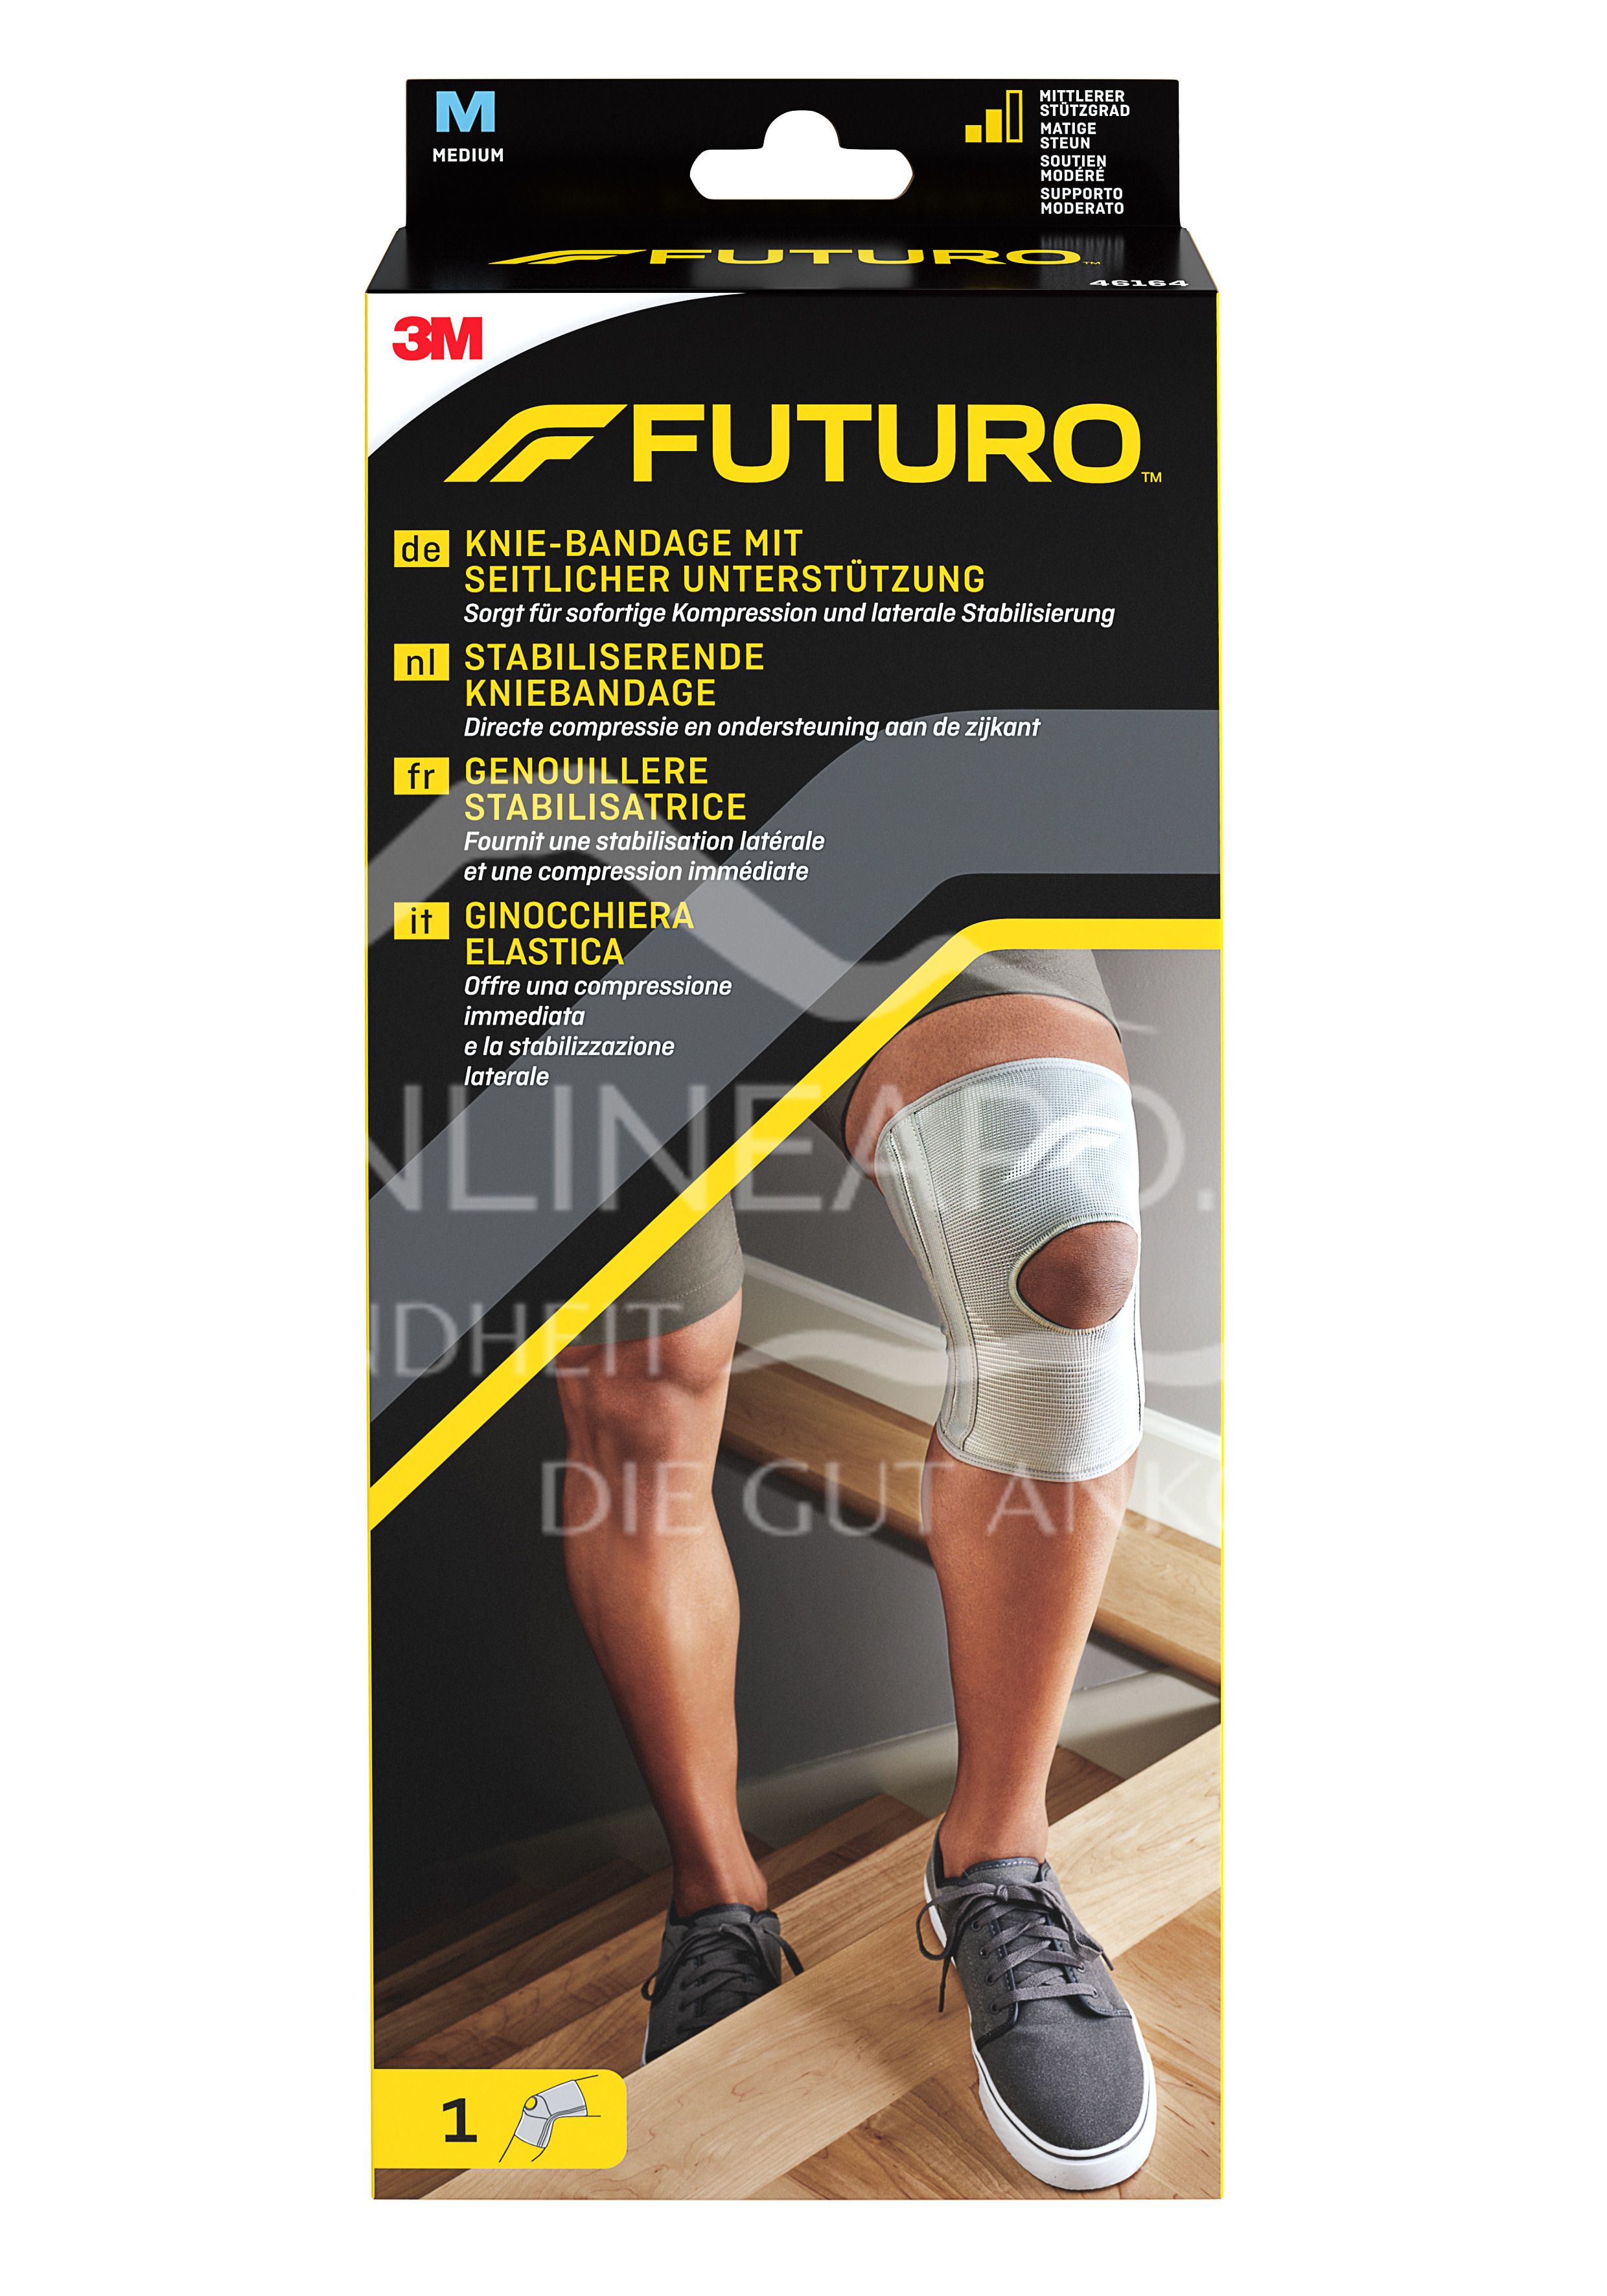 3M Futuro Knie-Bandage mit seitlicher Unterstützung 46164, Größe M